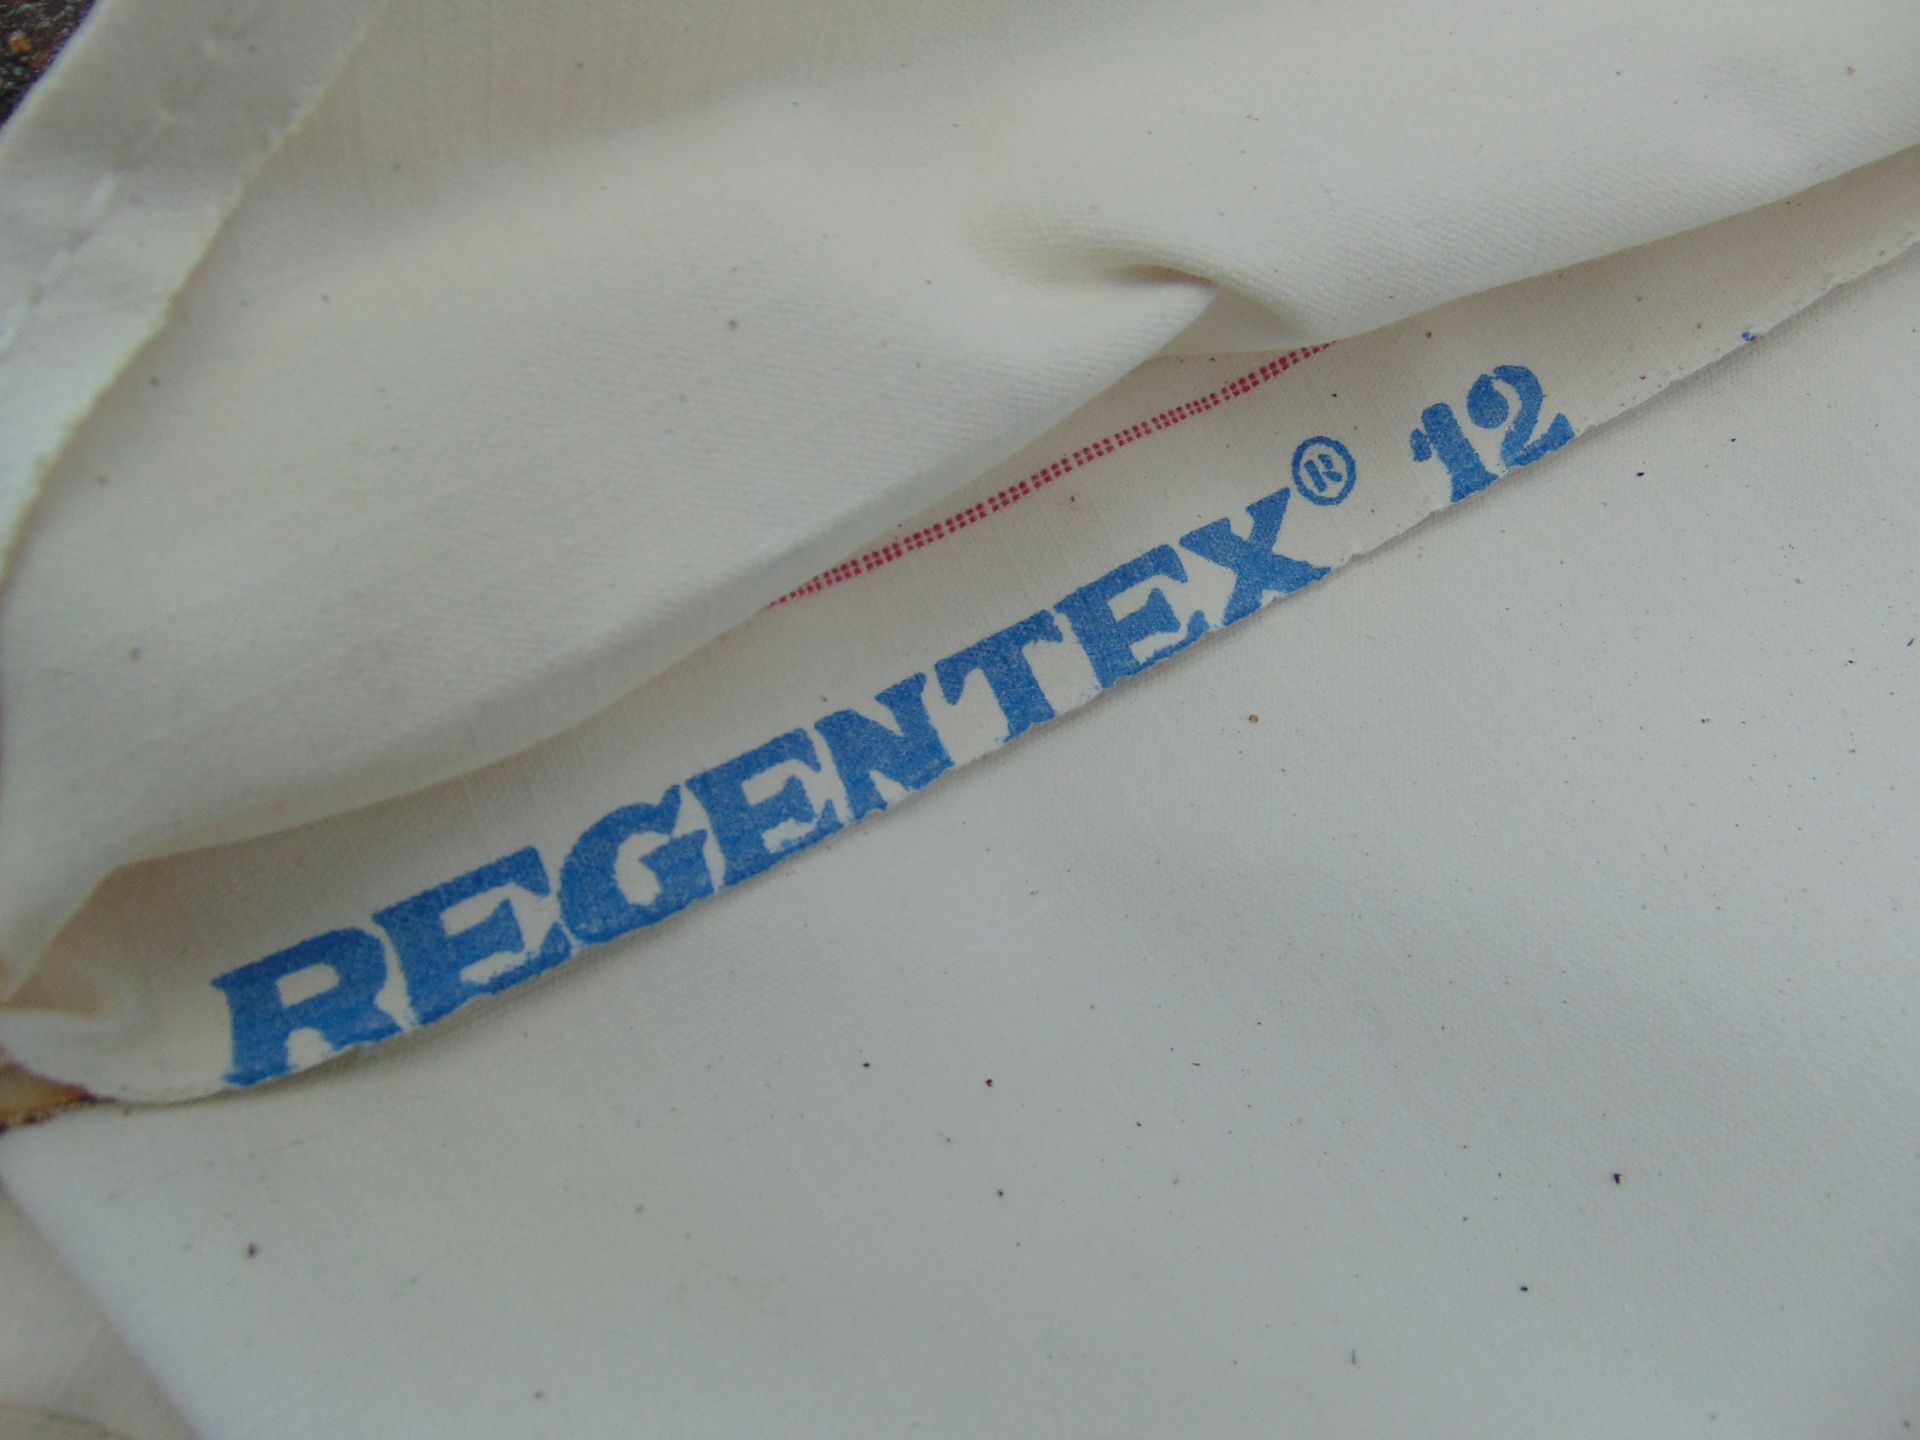 4 x Large Regentec 12 Cotton Bag Assys - Image 3 of 5